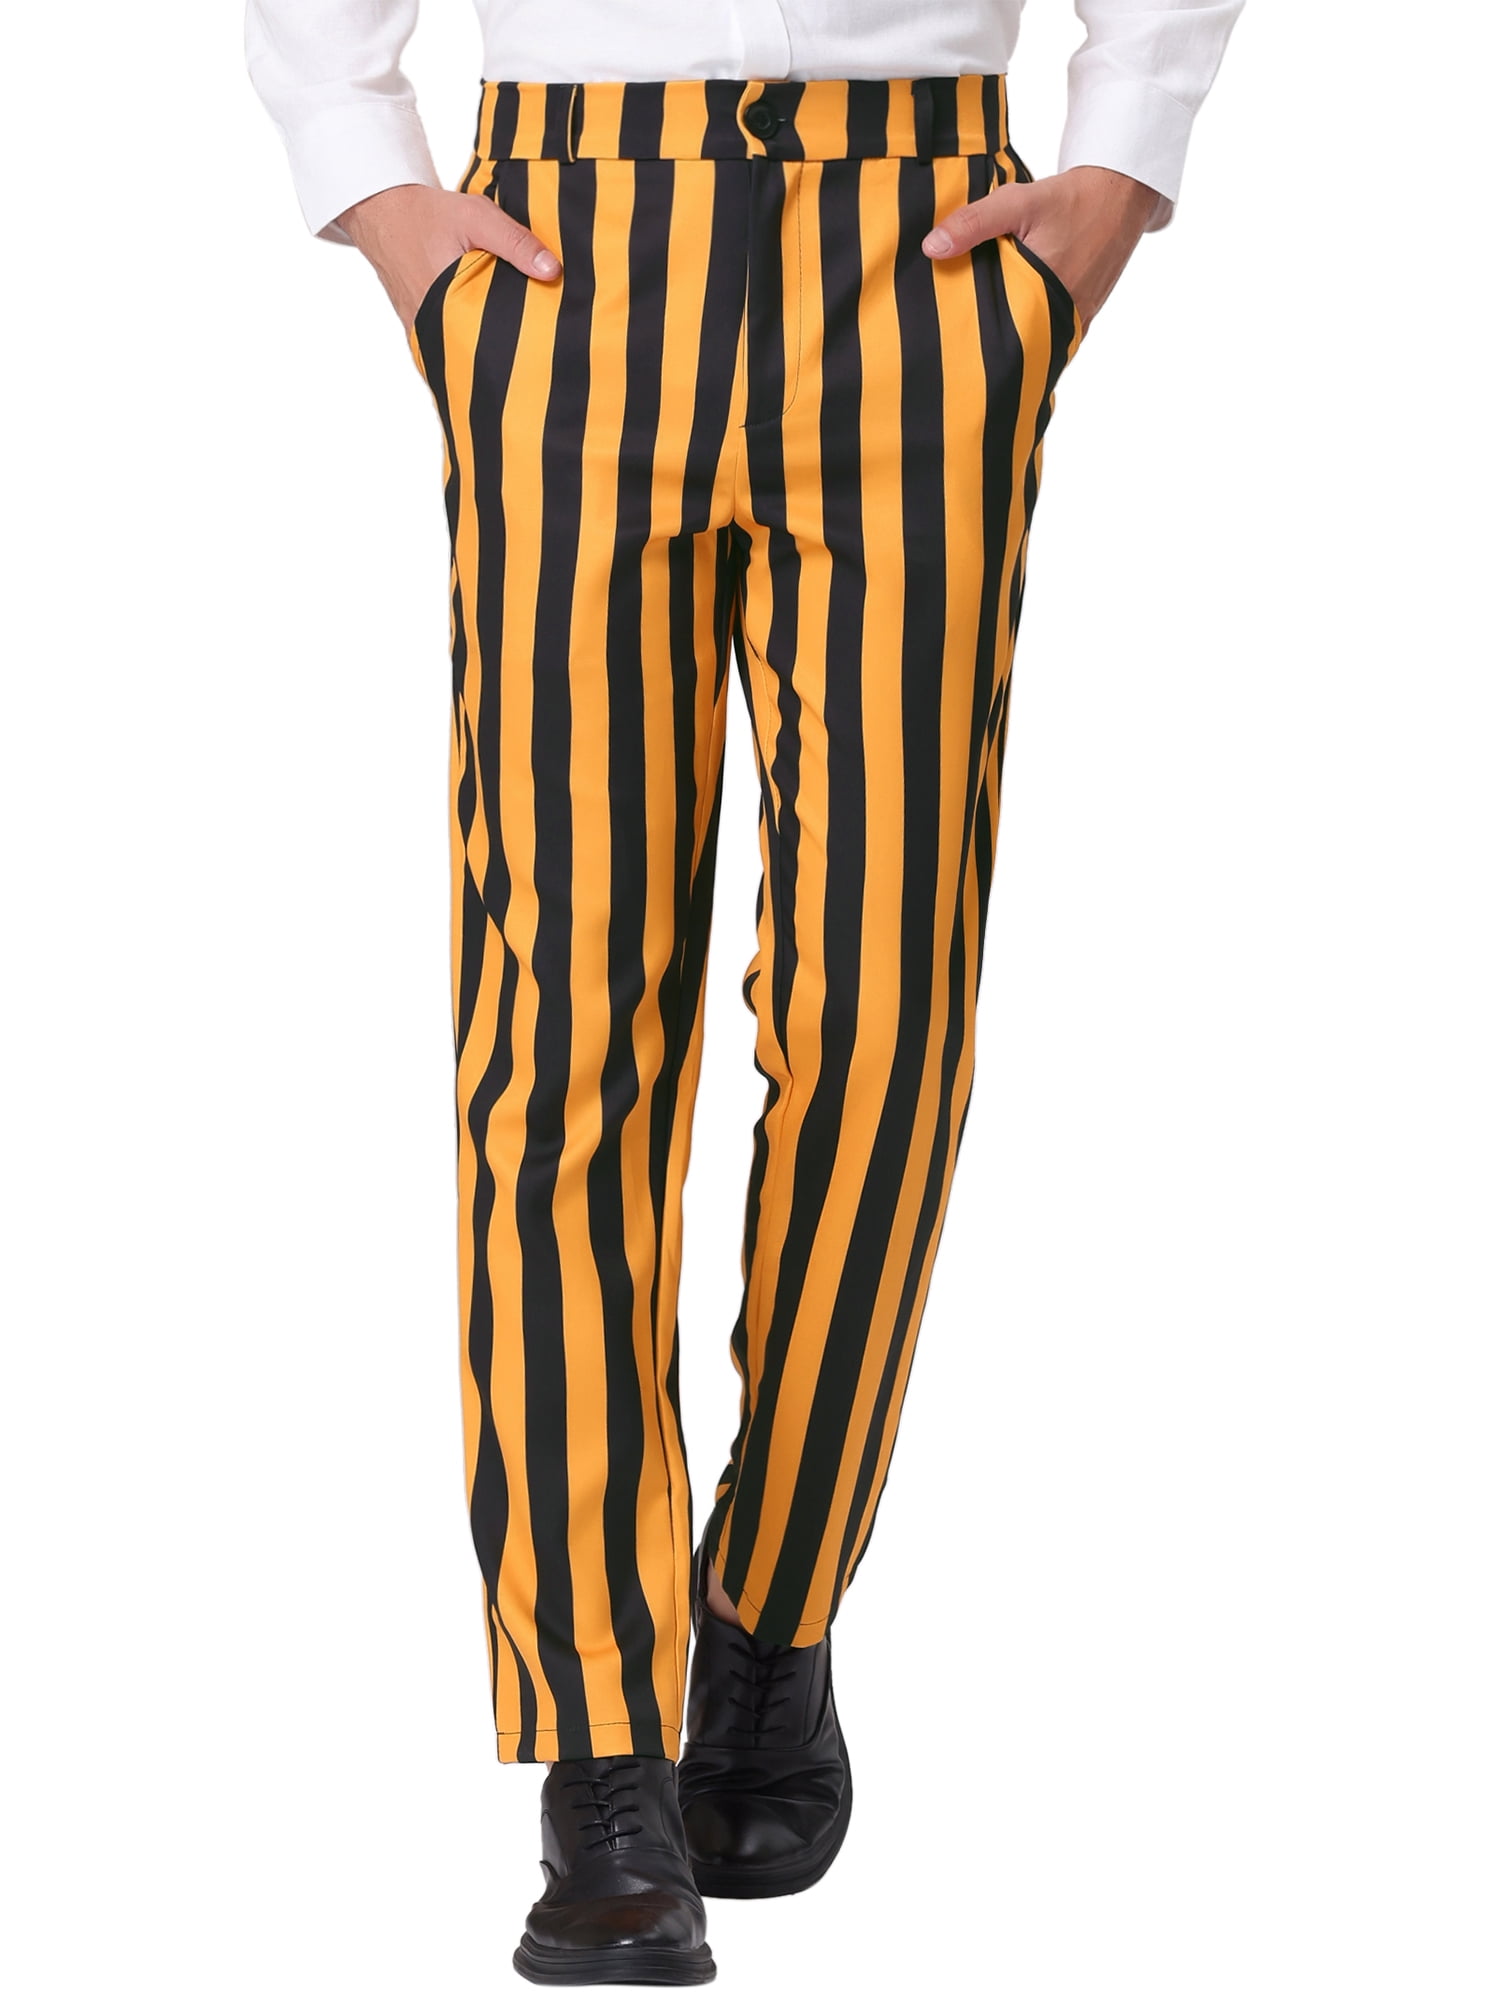 Unique Bargains Men's Striped Pants Skinny Fit Color Block Trousers